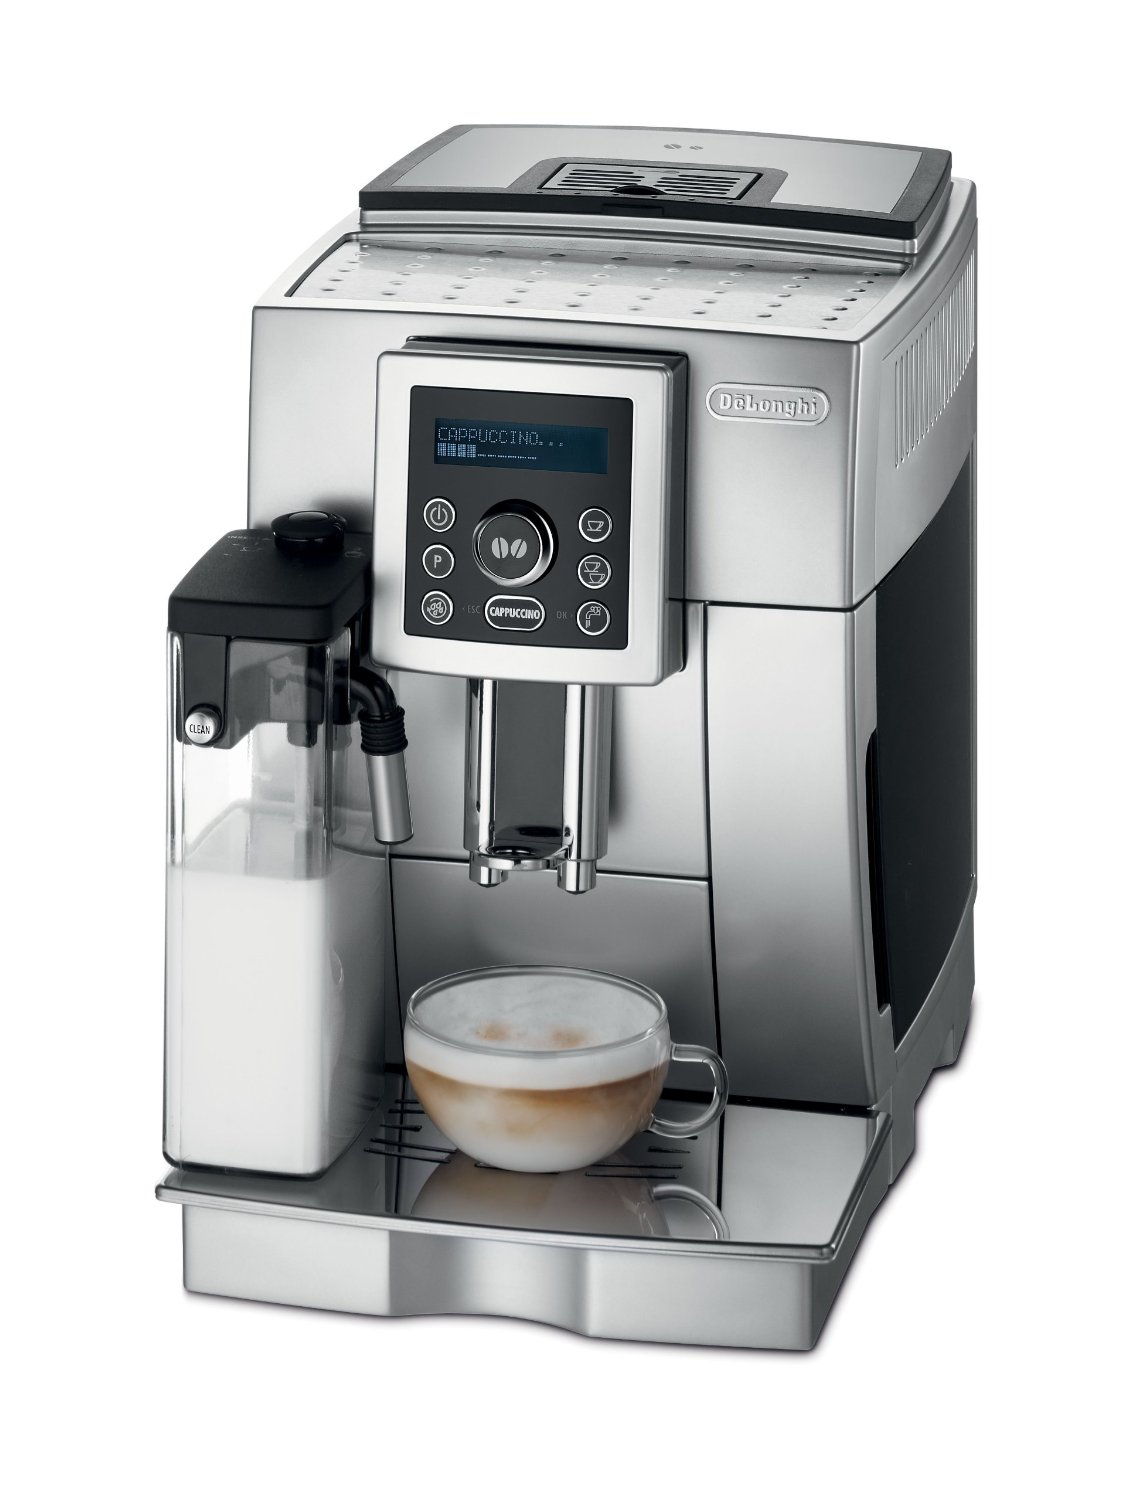 Delonghi Super Automatic Espresso Machine Reviews Coffee